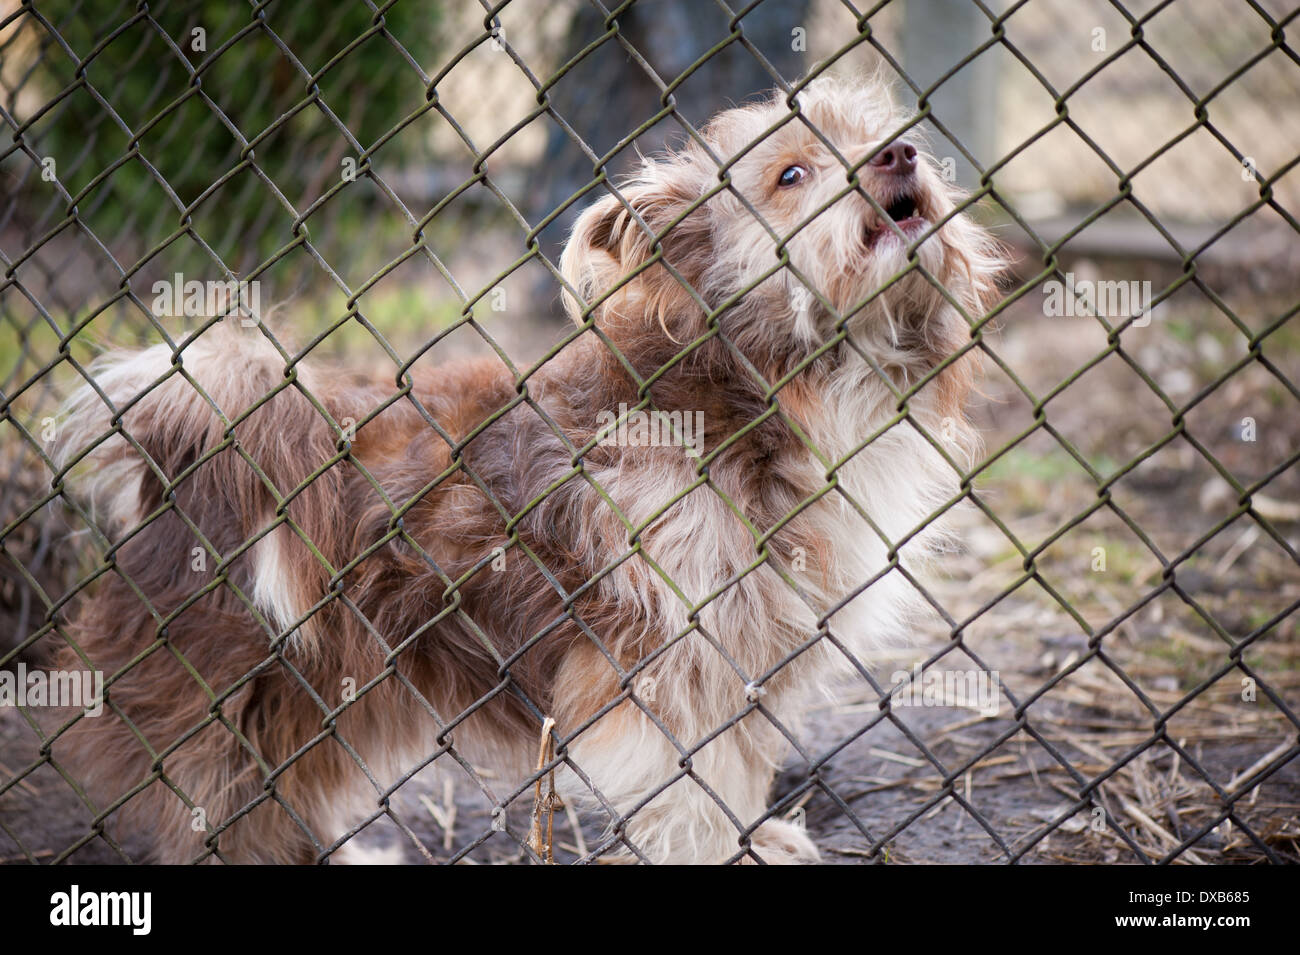 dog barking behind the fence Stock Photo